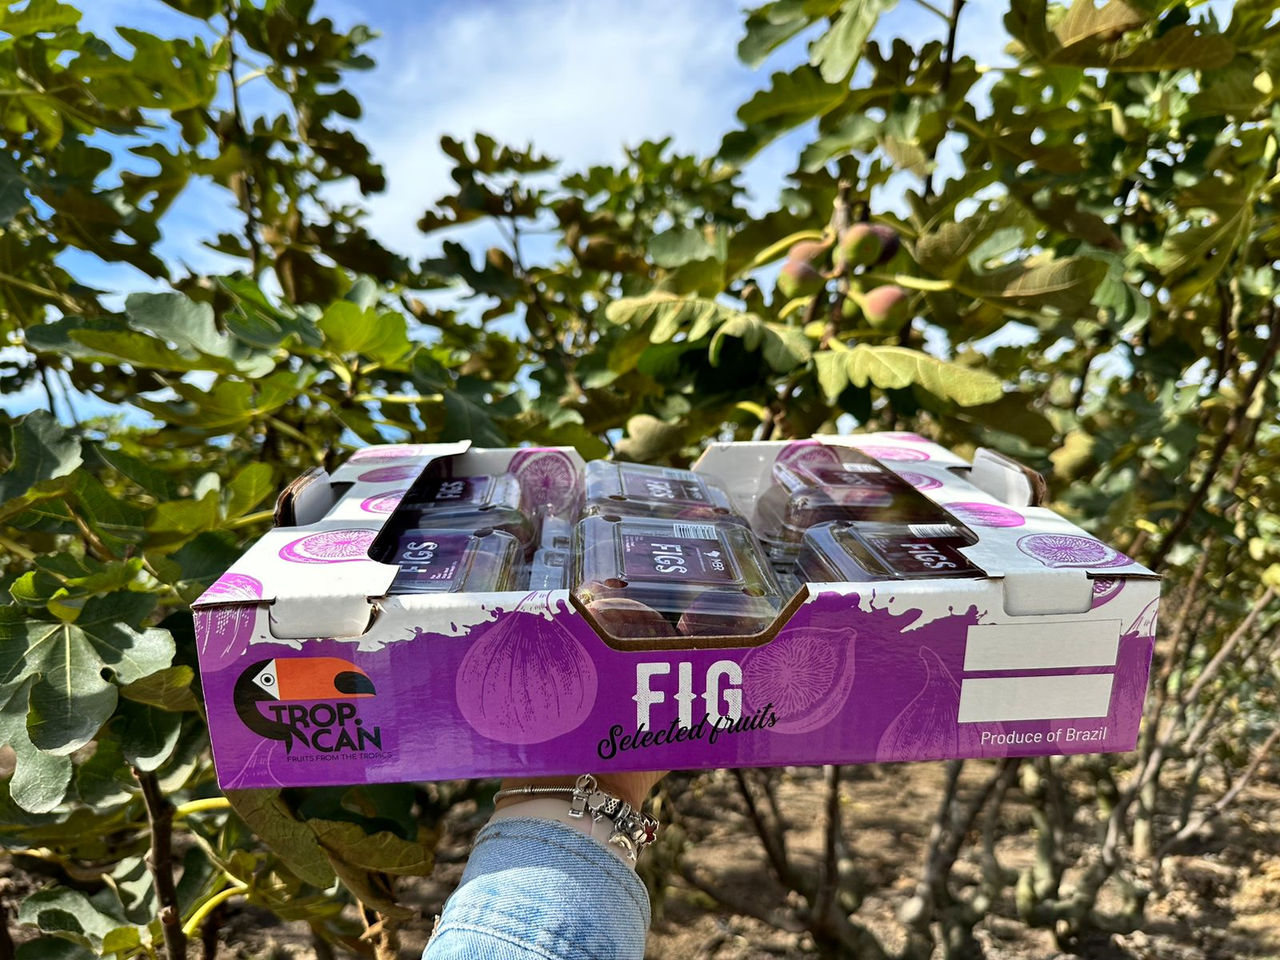 Tecnologia em embalagens leva frutas frescas brasileiras para todo o mundo com a MBR Company